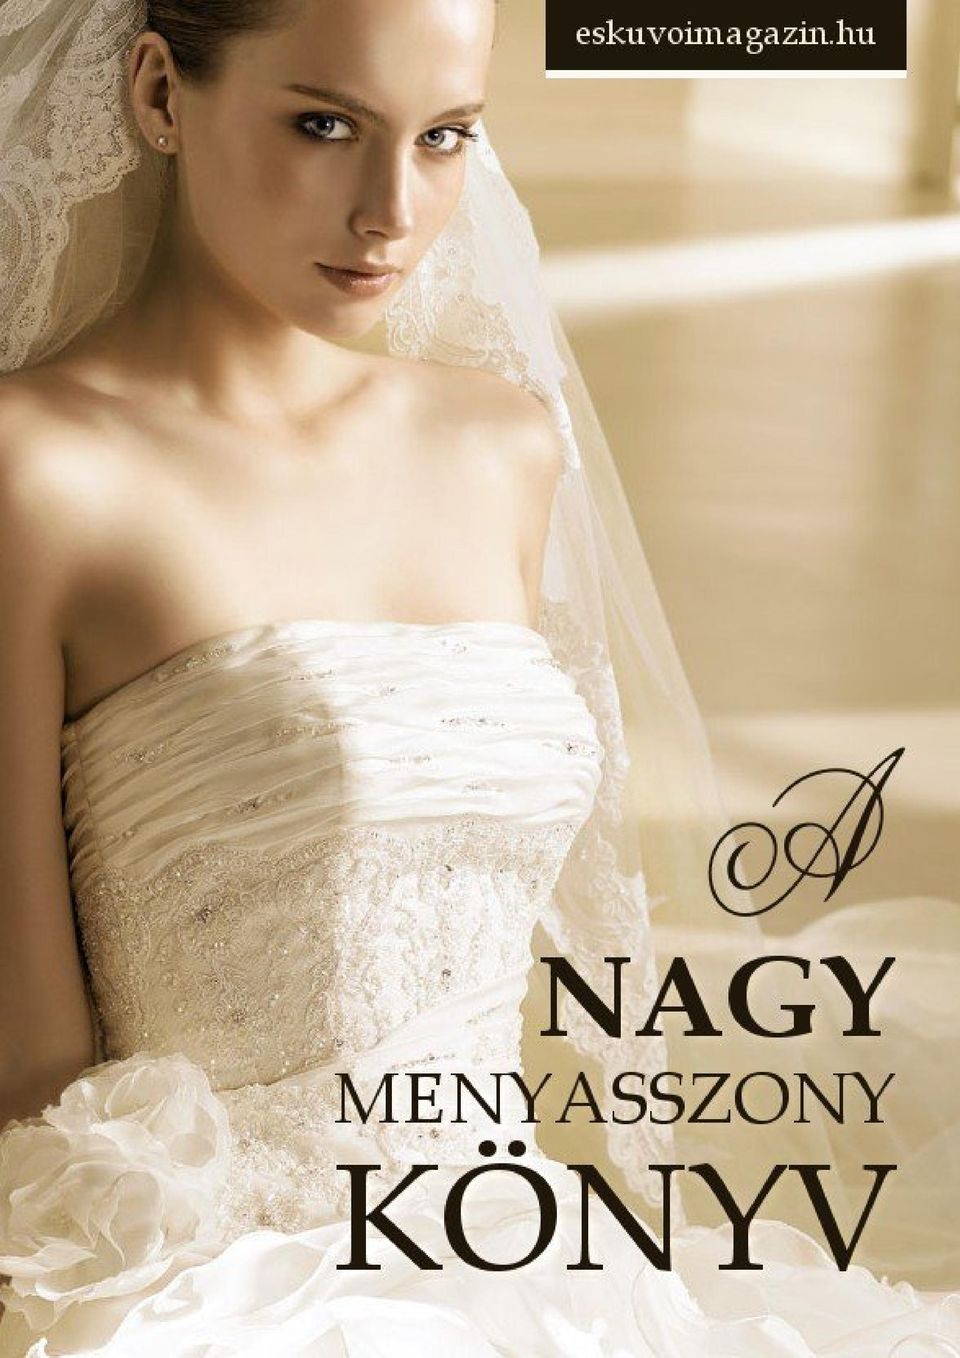 A Nagy Menyasszony Könyv - eskuvoimagazin.hu - PDF Ingyenes letöltés